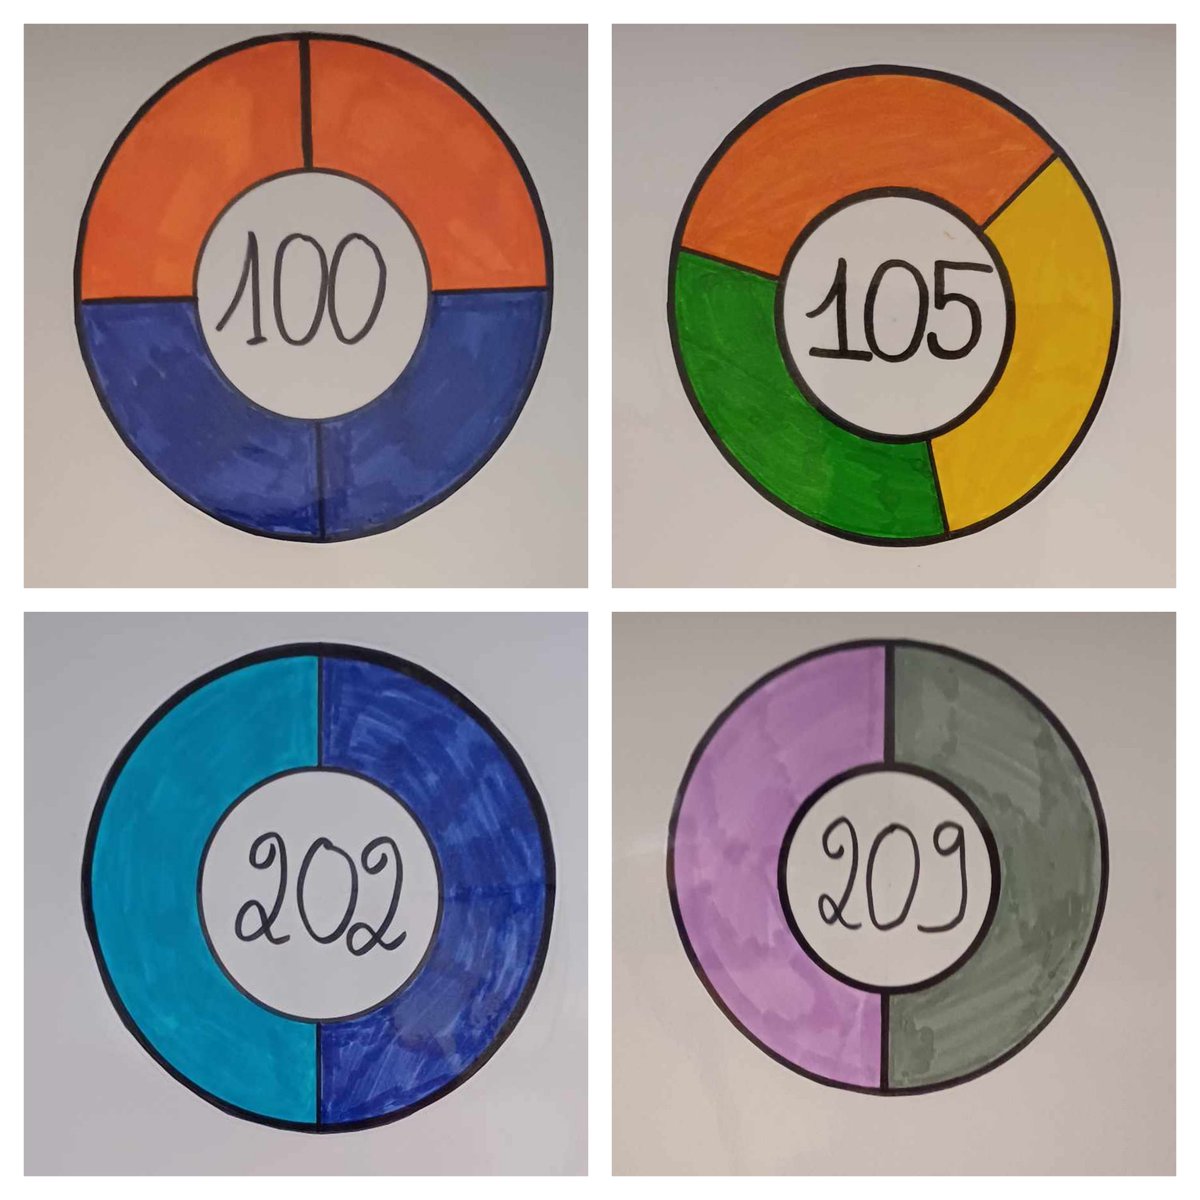 #sdm2024 #SemaineDesMaths
Des élèves ont travaillé sur une représentation chromatique des nombres et ont réalisé un affichage pour les numéros des salles du collège